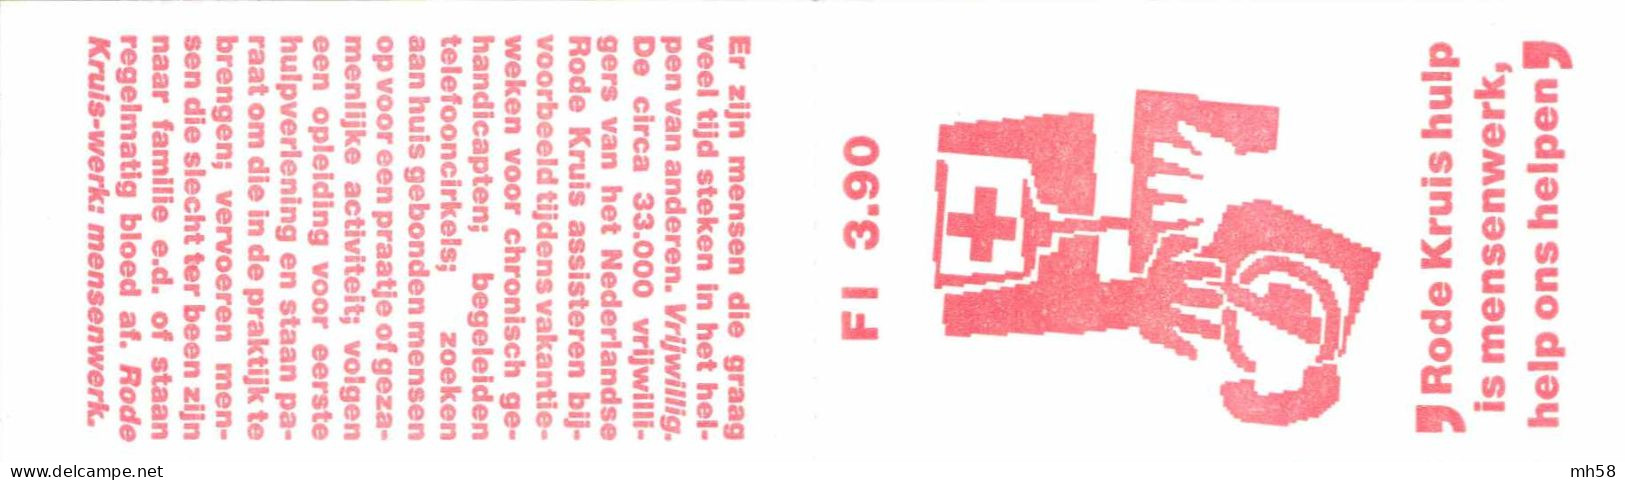 PAYS-BAS NEDERLAND 1987 Carnet / Booklet / MH Indice PB 36 - 3,90 G Croix-Rouge Dessins Stylisés - YT C 1293a / MI MH 37 - Carnets Et Roulettes